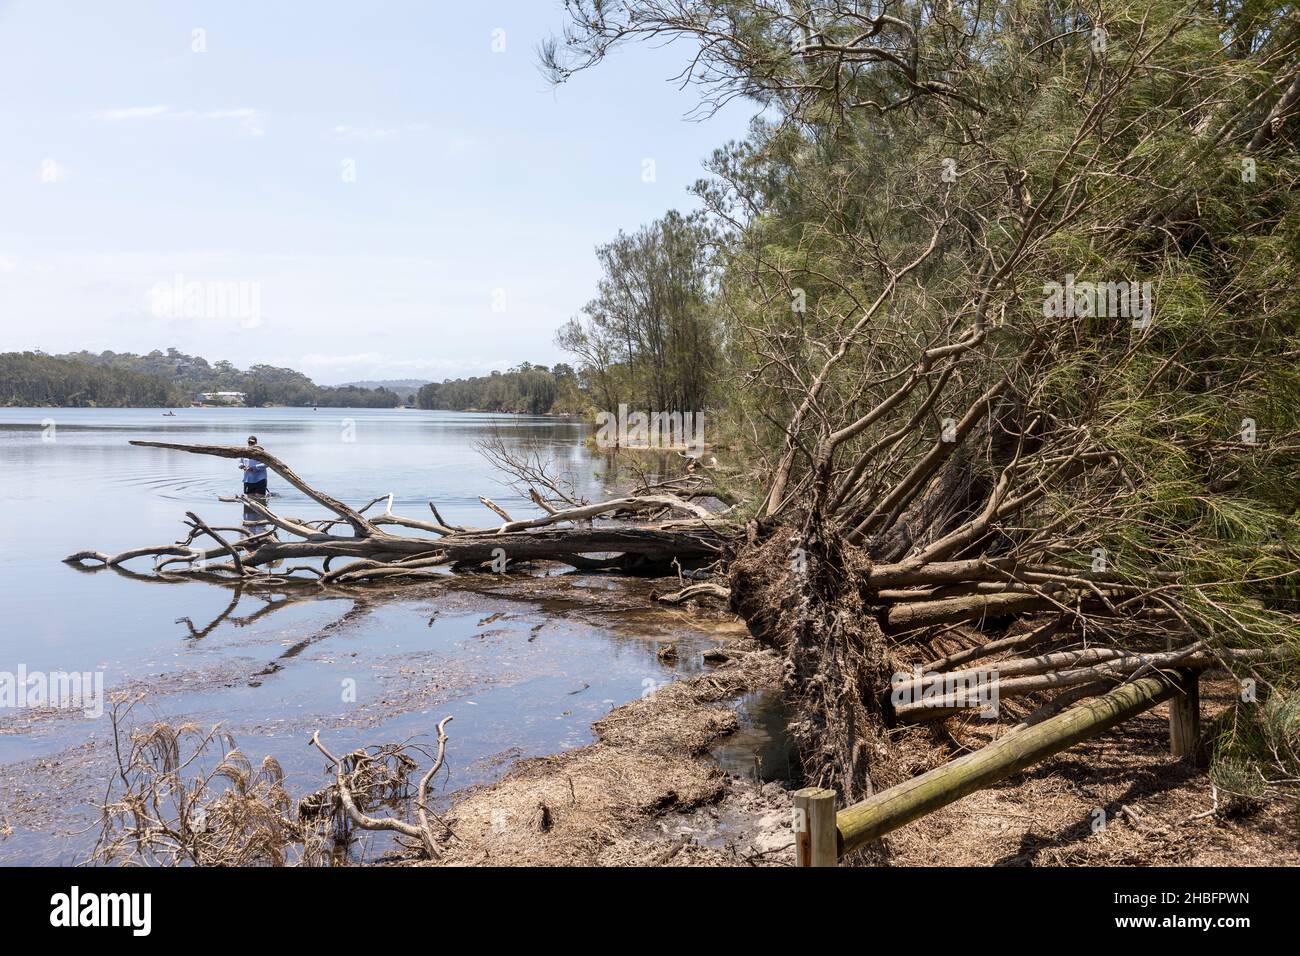 Giorno dopo la tempesta freak ha danneggiato gli alberi al lago Narrabeen, pesci dell'uomo accanto ad un albero sradicato, Sydney, Australia Dicembre 2021 Foto Stock